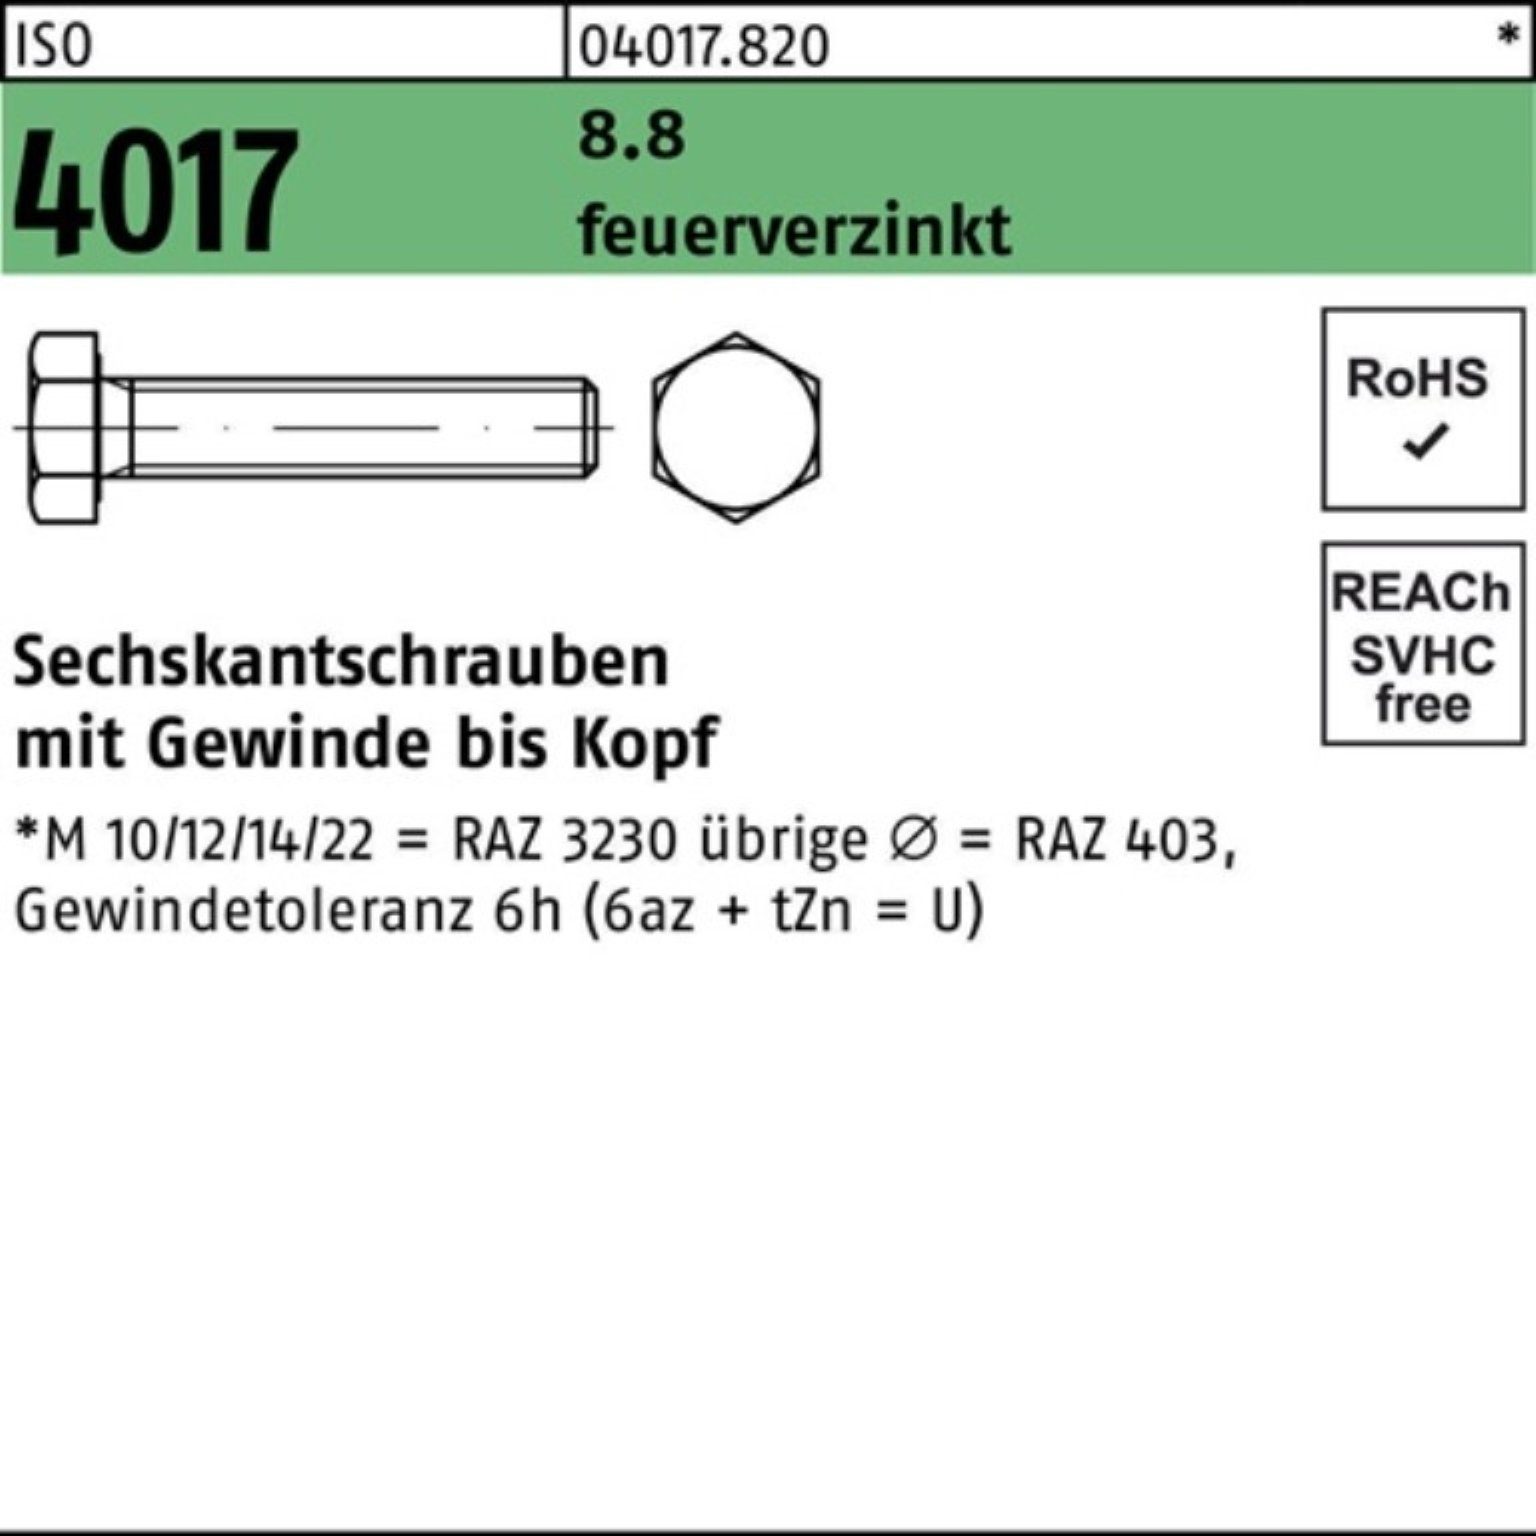 Sechskantschraube Sechskantschraube St VG Bufab feuerverz. 4017 8.8 500 500er M6x 20 Pack ISO